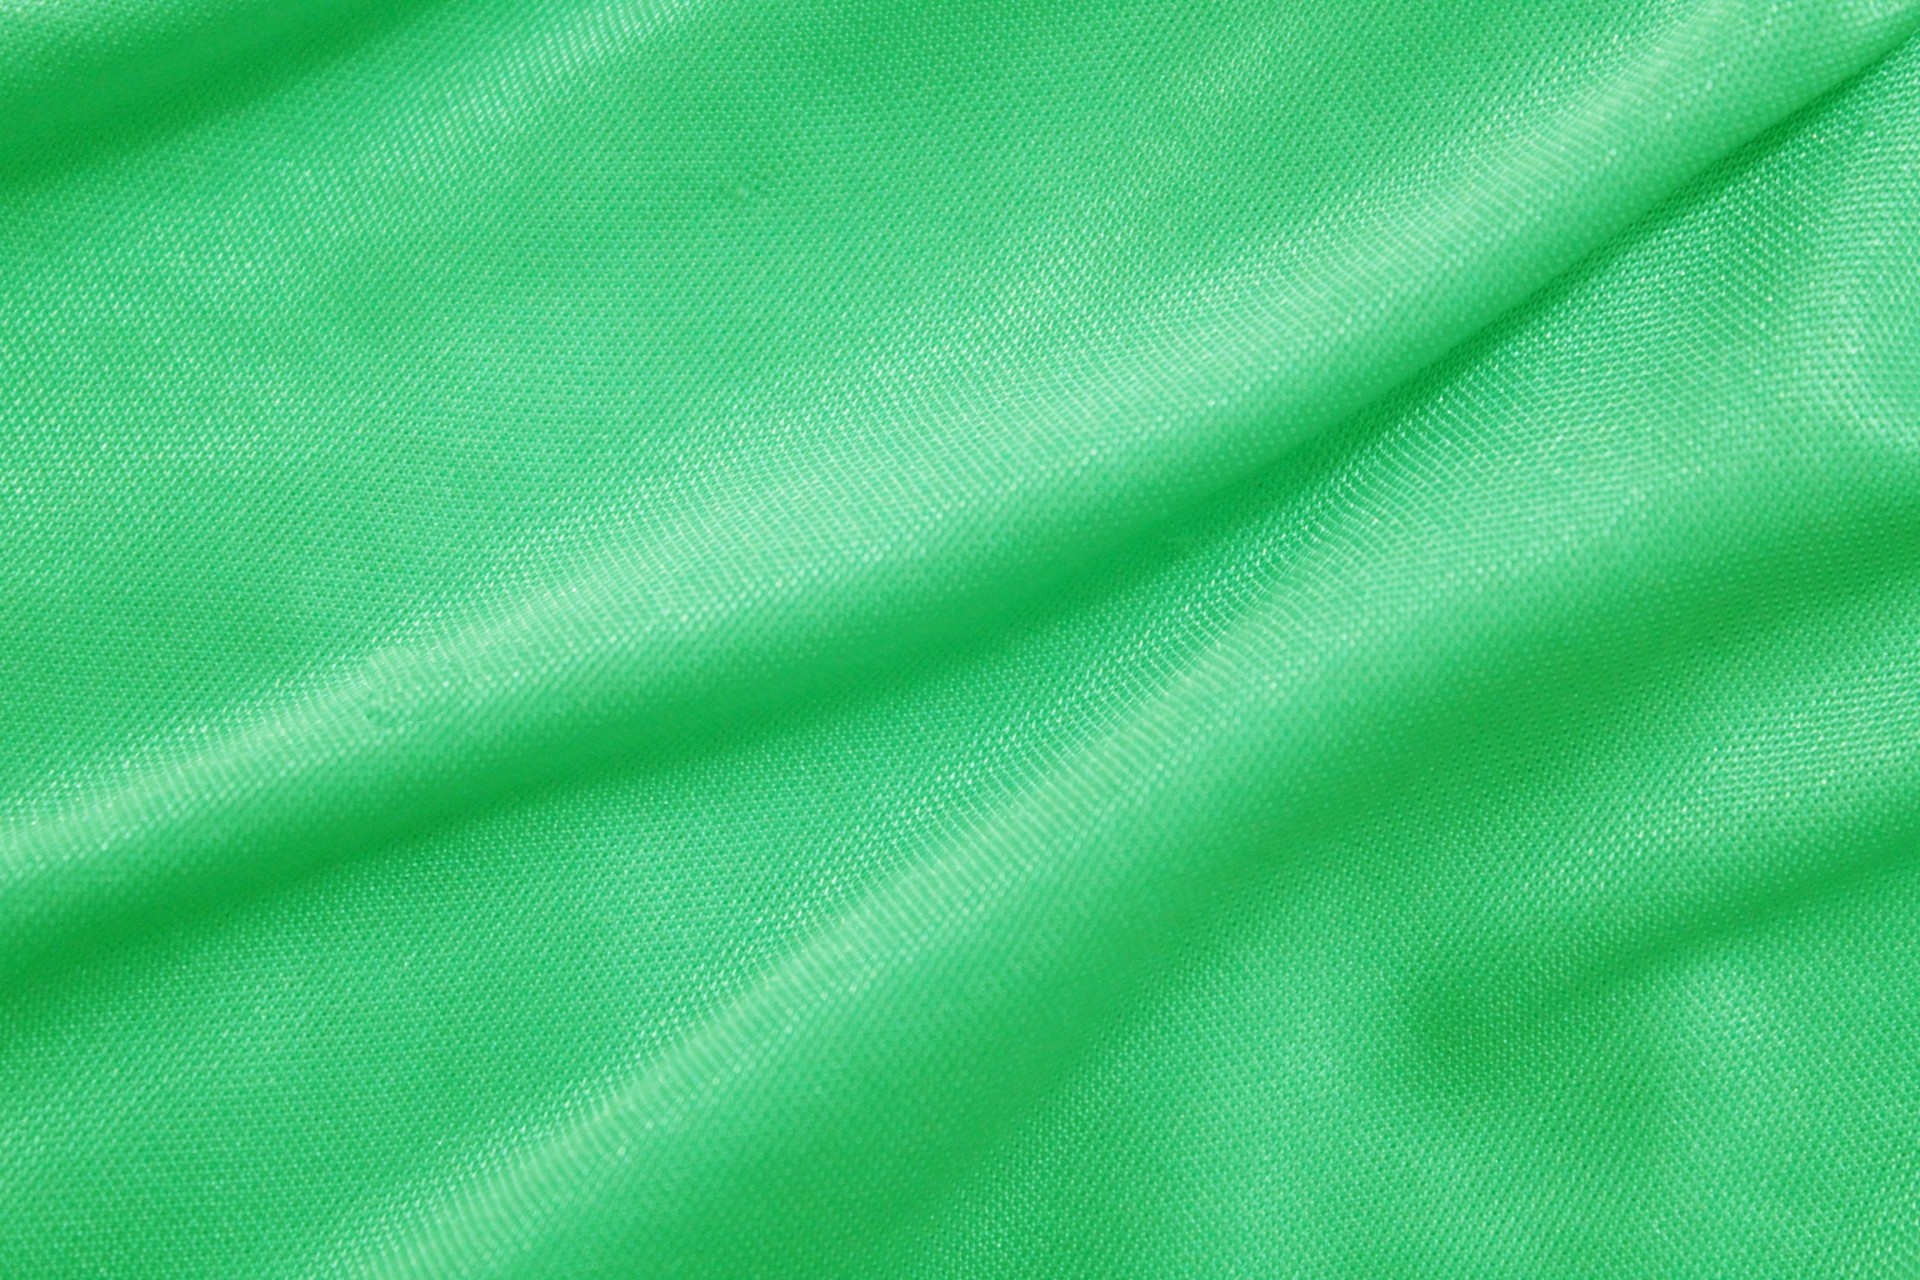 Thiết kế nền vải xanh lá cây rực rỡ và sinh động này sẽ khiến cho bất kỳ không gian nào cũng trở nên sôi động và ấm áp hơn. Hãy đưa bản thân vào trong hình ảnh này và cảm nhận sự sống động của nó!